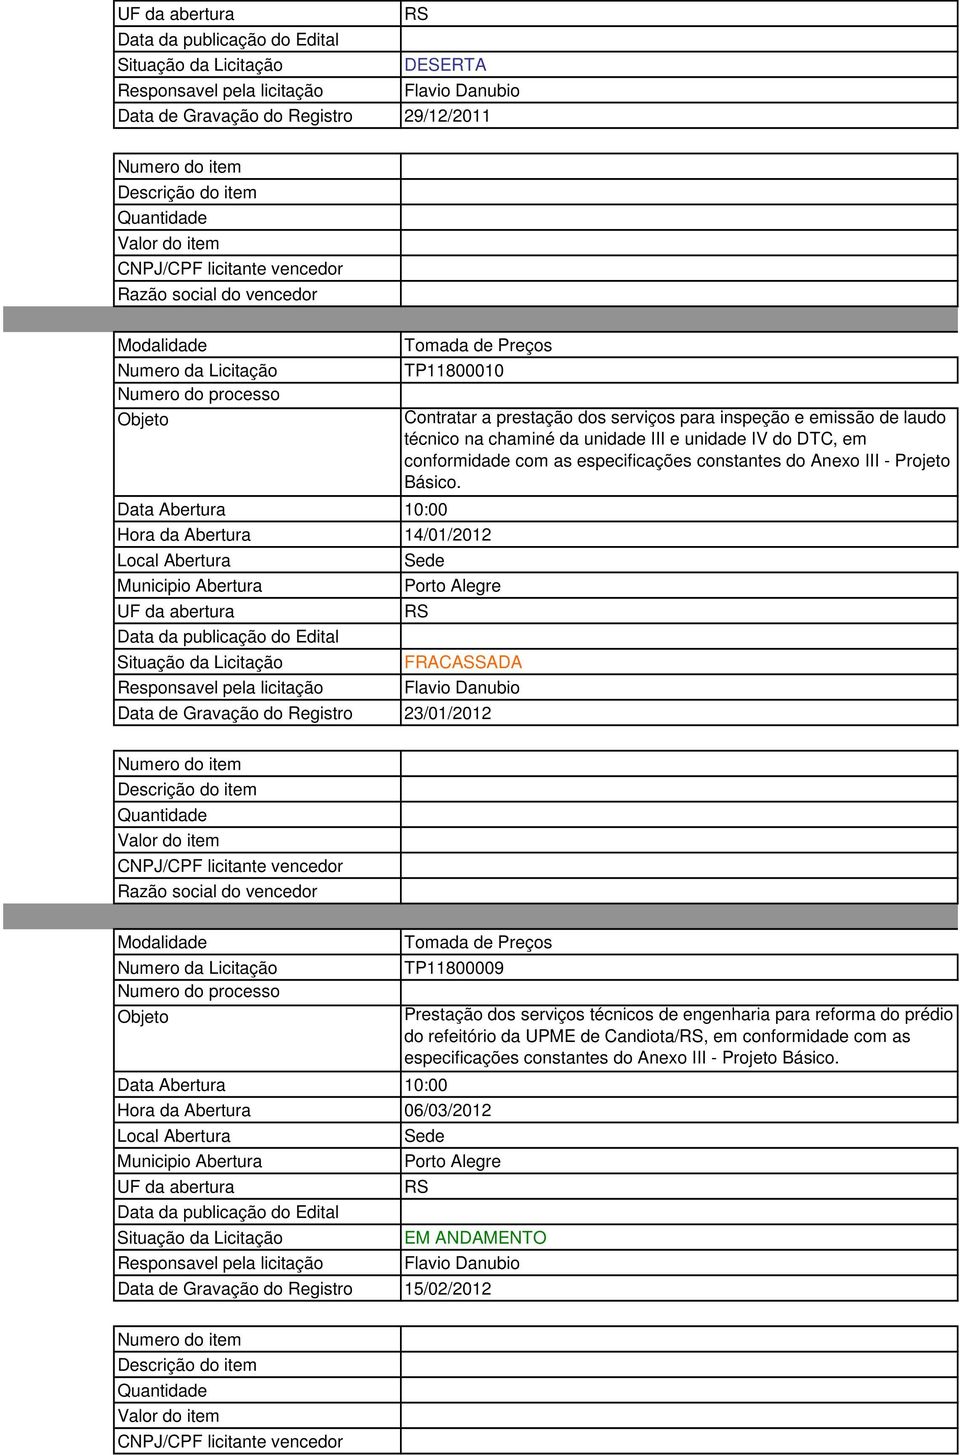 FRACASSADA Data de Gravação do Registro 23/01/2012 TP11800009 Hora da Abertura 06/03/2012 Prestação dos serviços técnicos de engenharia para reforma